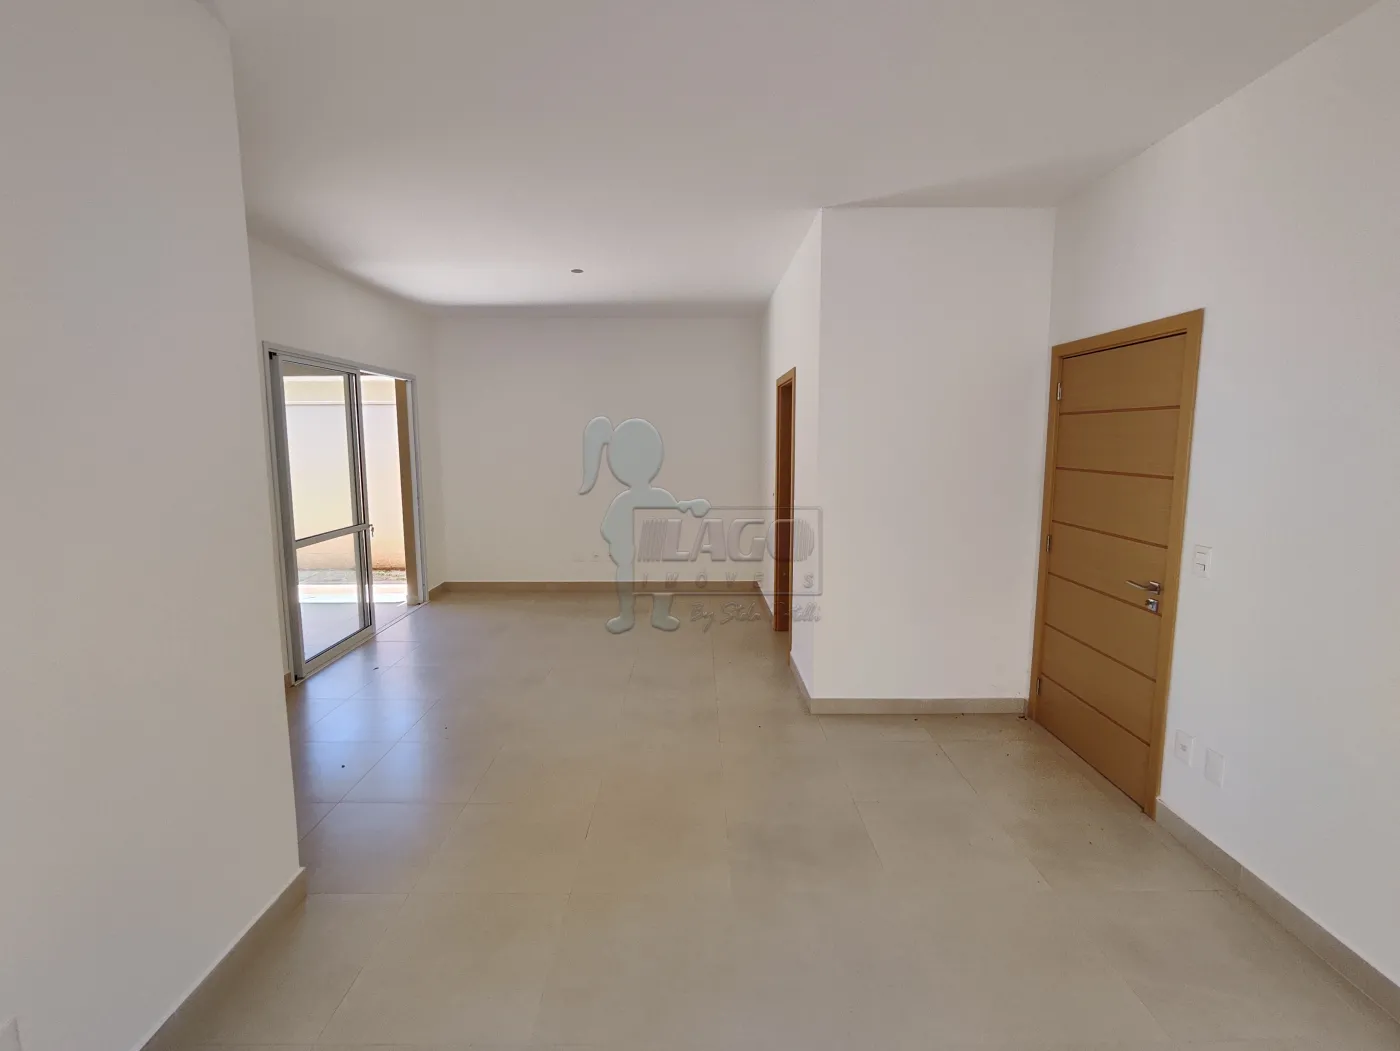 Comprar Casa condomínio / Padrão em Cravinhos R$ 950.000,00 - Foto 9